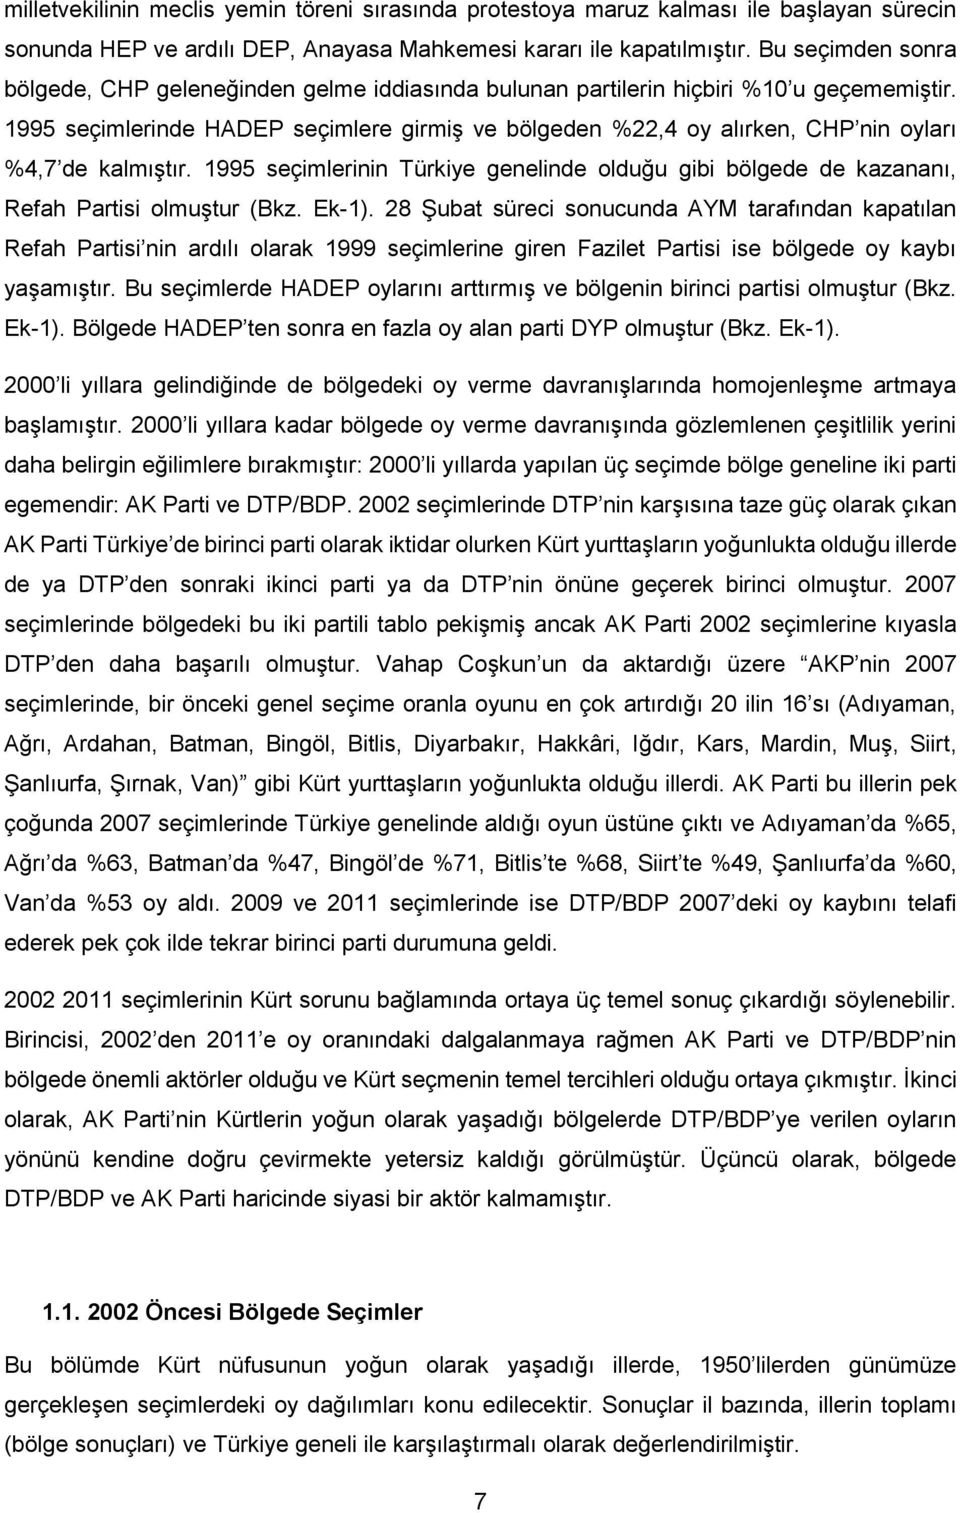 1995 seçimlerinde HADEP seçimlere girmiş ve bölgeden %22,4 oy alırken, CHP nin oyları %4,7 de kalmıştır.